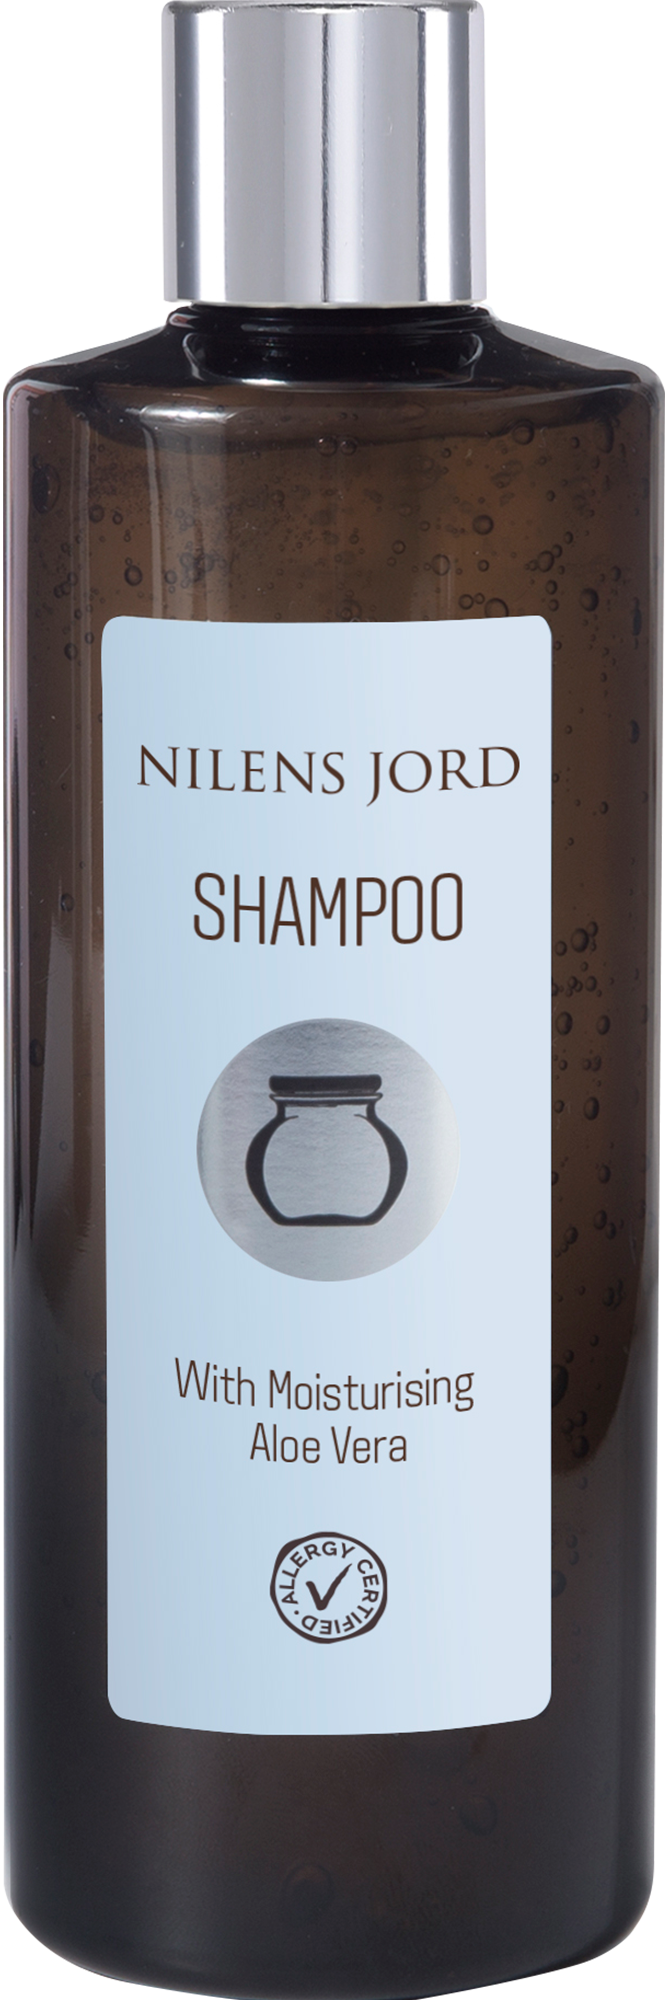 1: Nilens Jord Shampoo 300 ml.